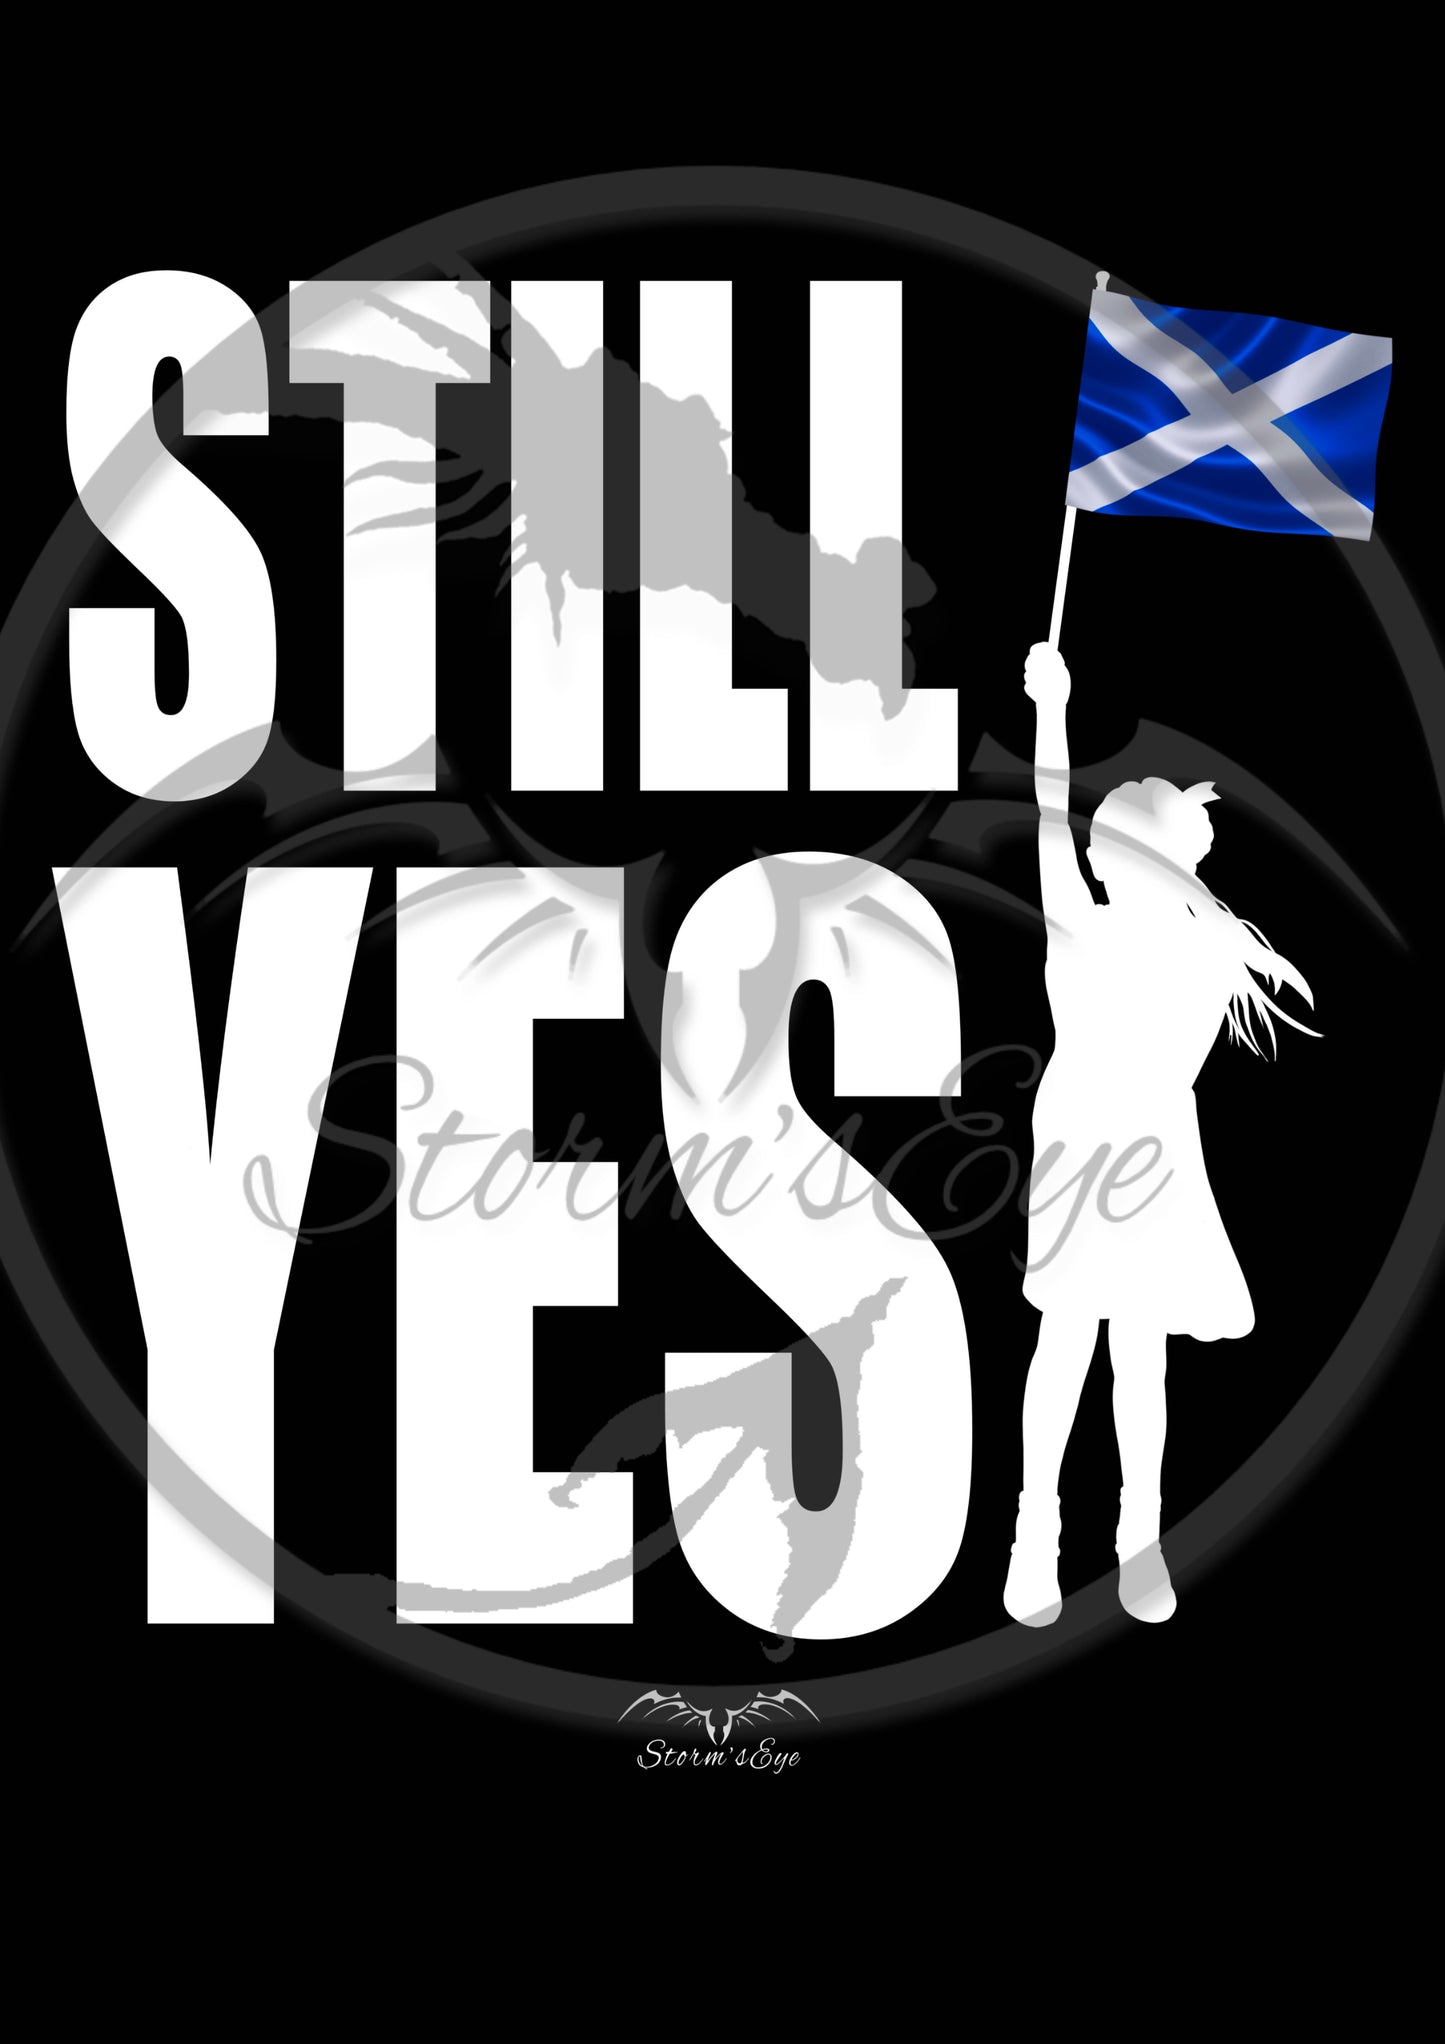 Stormseye Design saltire Scotland Independence still yes design